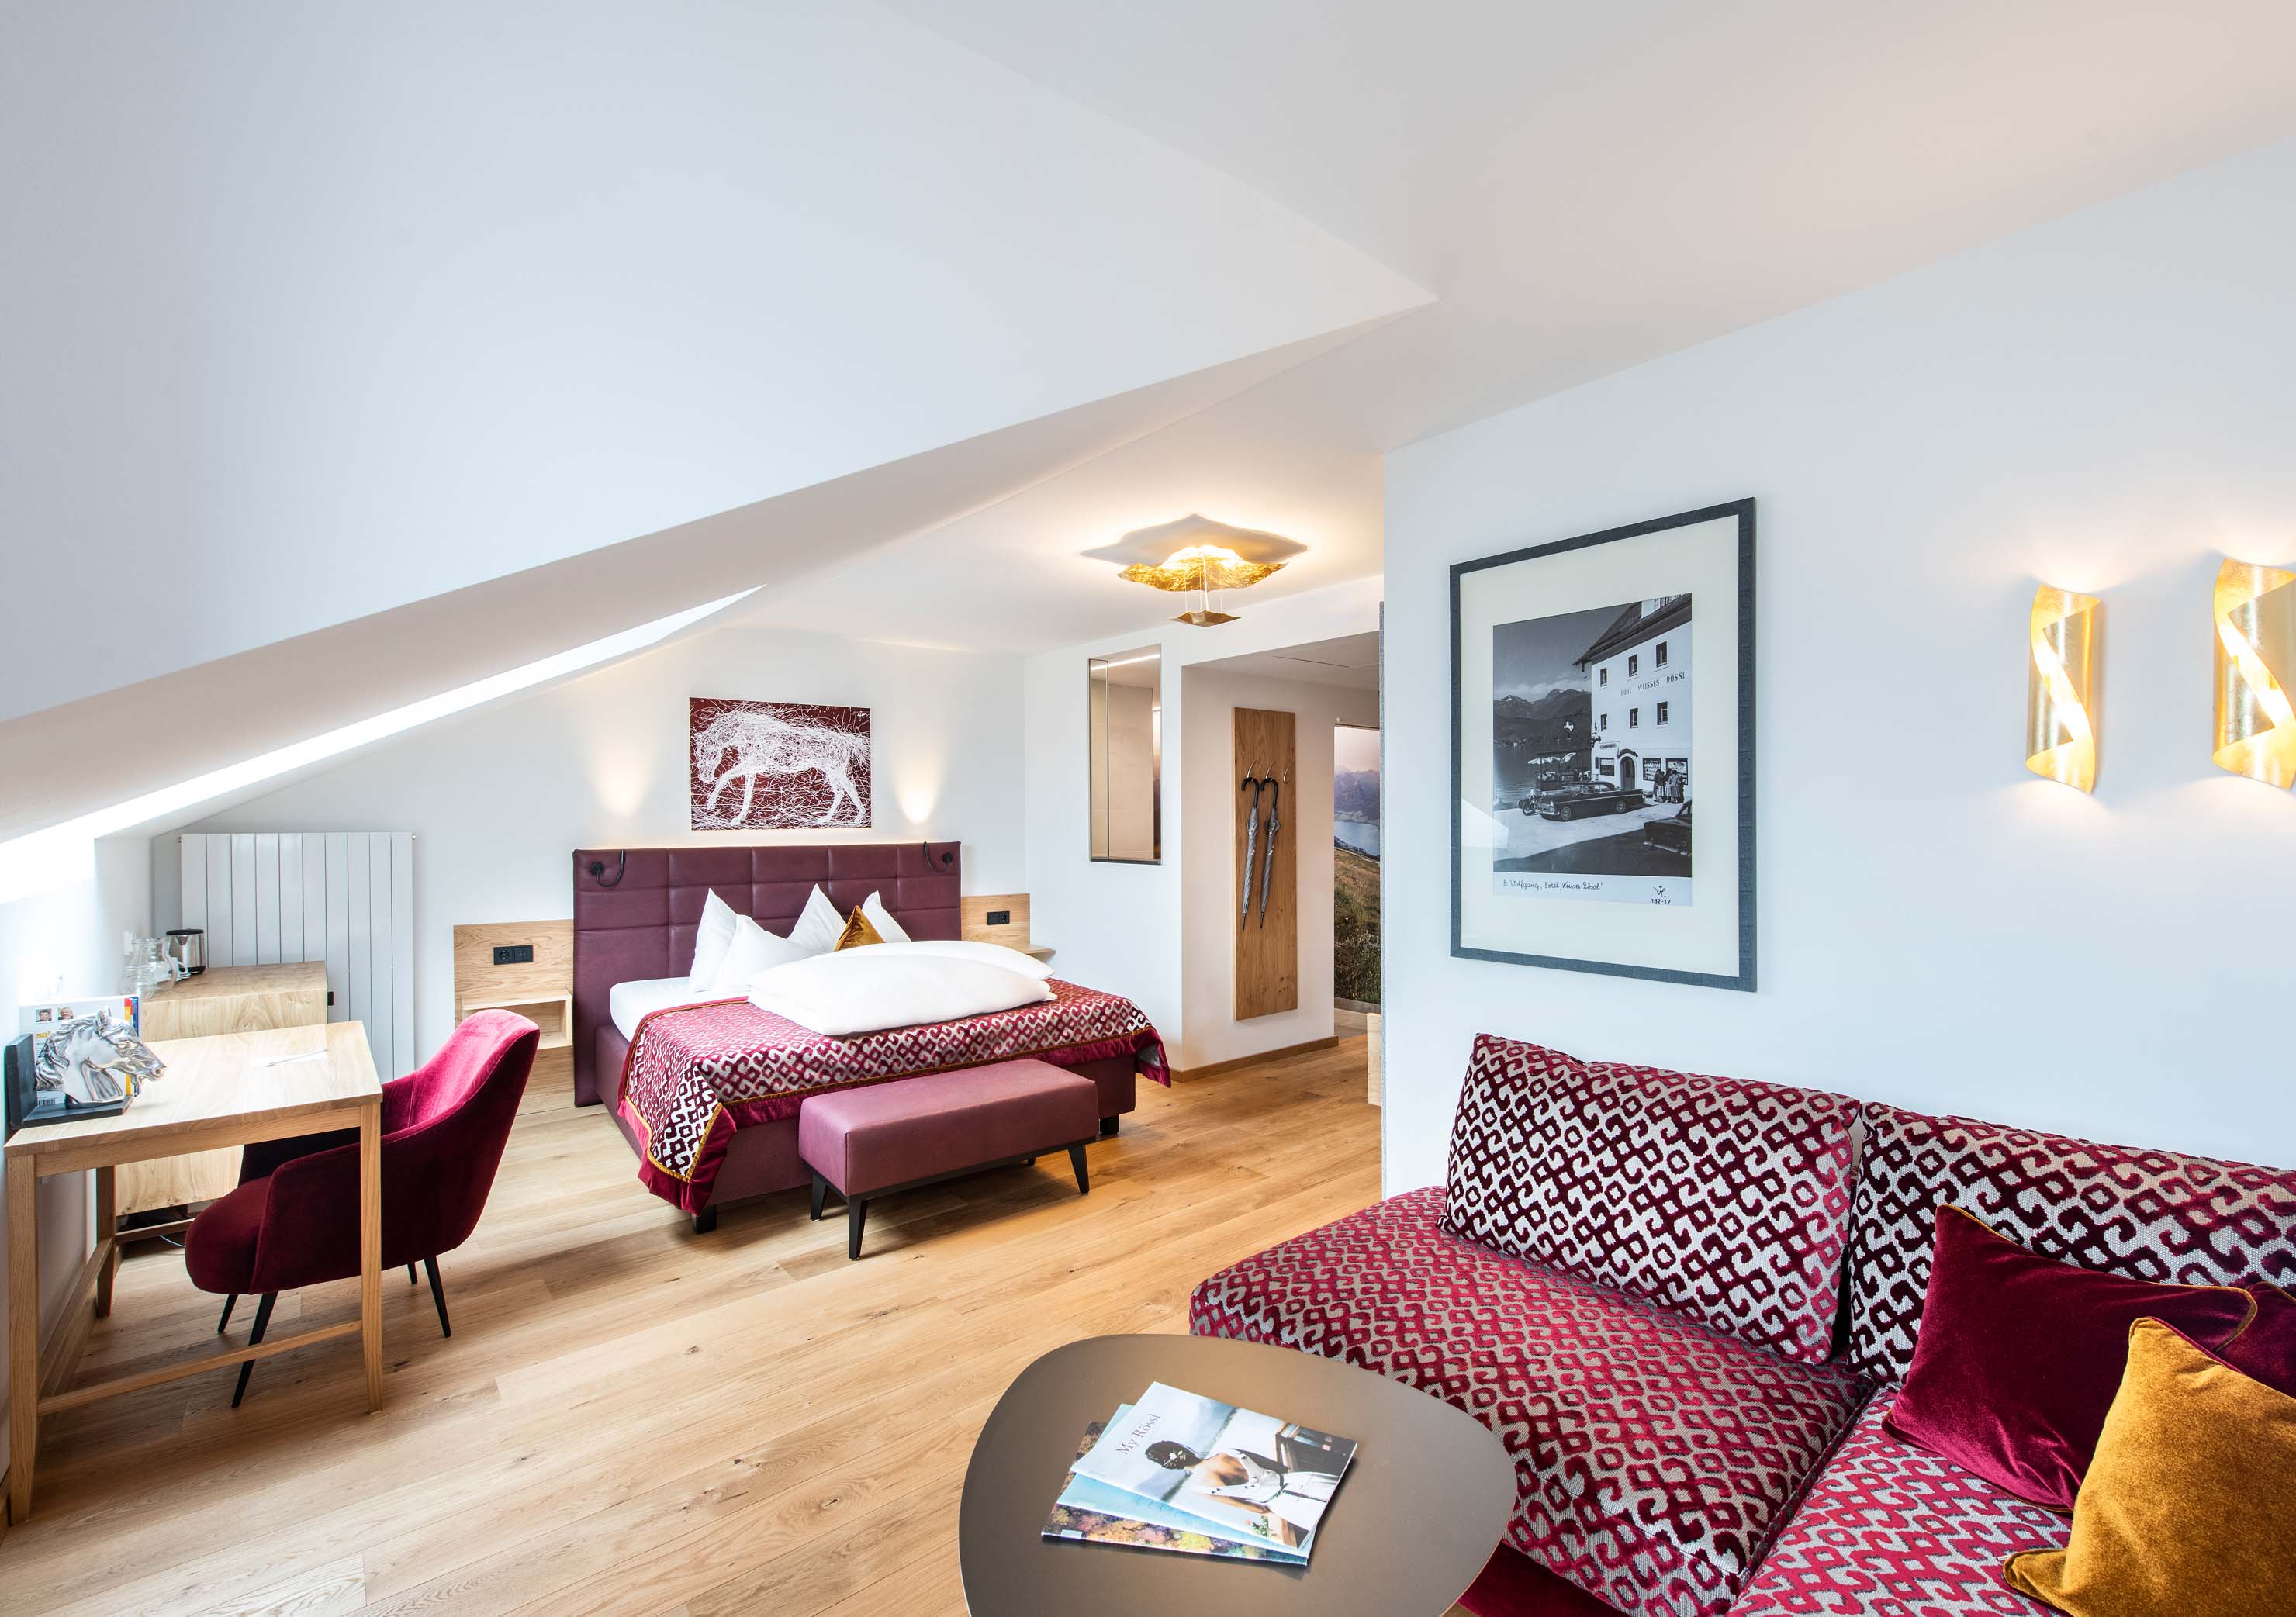 Helle moderne Hotelzimmer mit indirekter Beleuchtung und detaillierter roten Raumeinrichtung